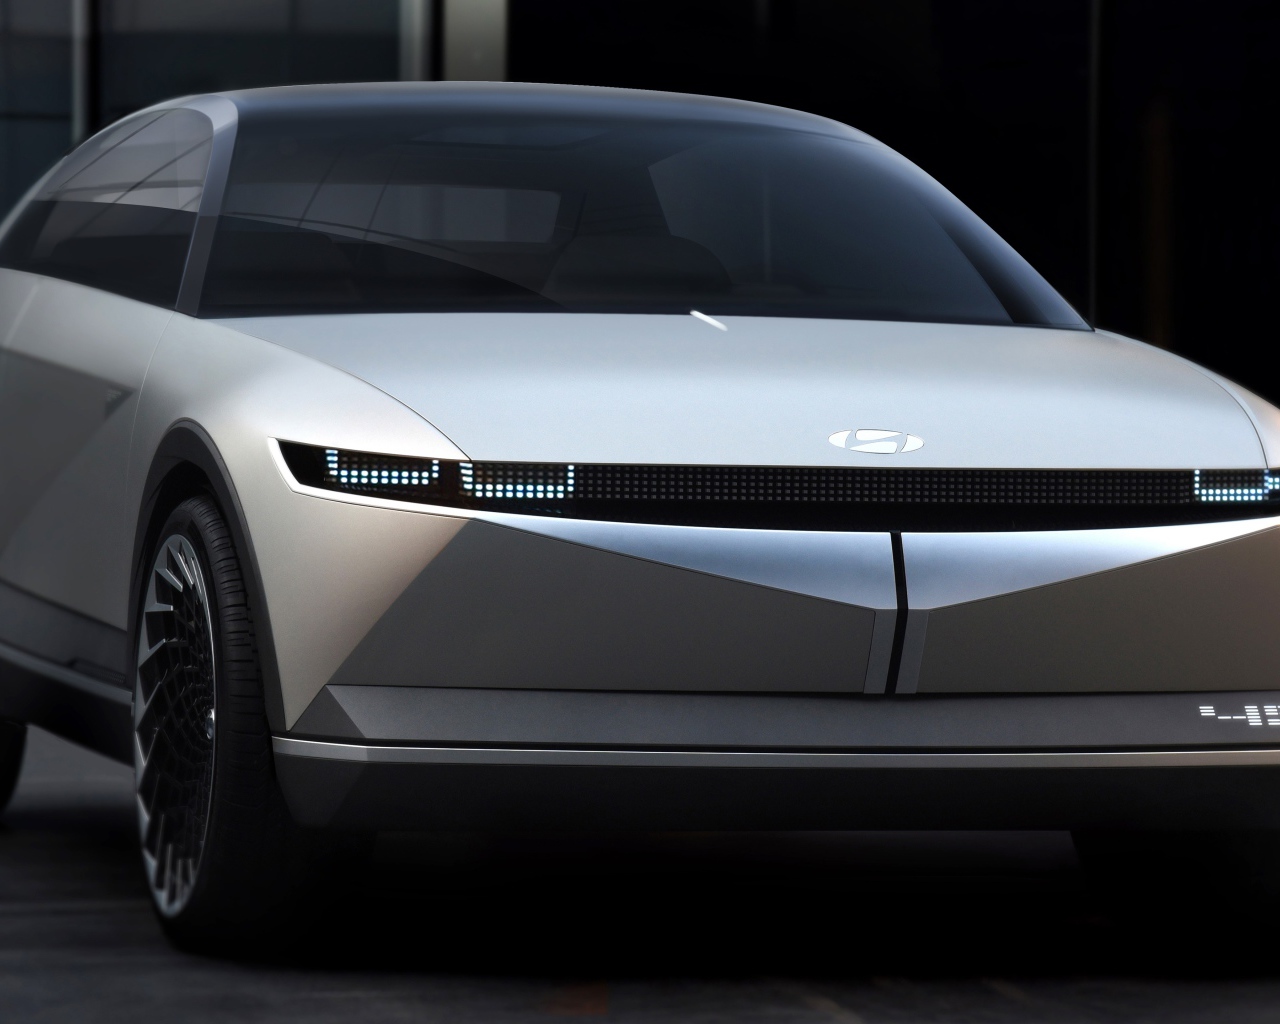 2019 Hyundai Gray 45 EV Concept car